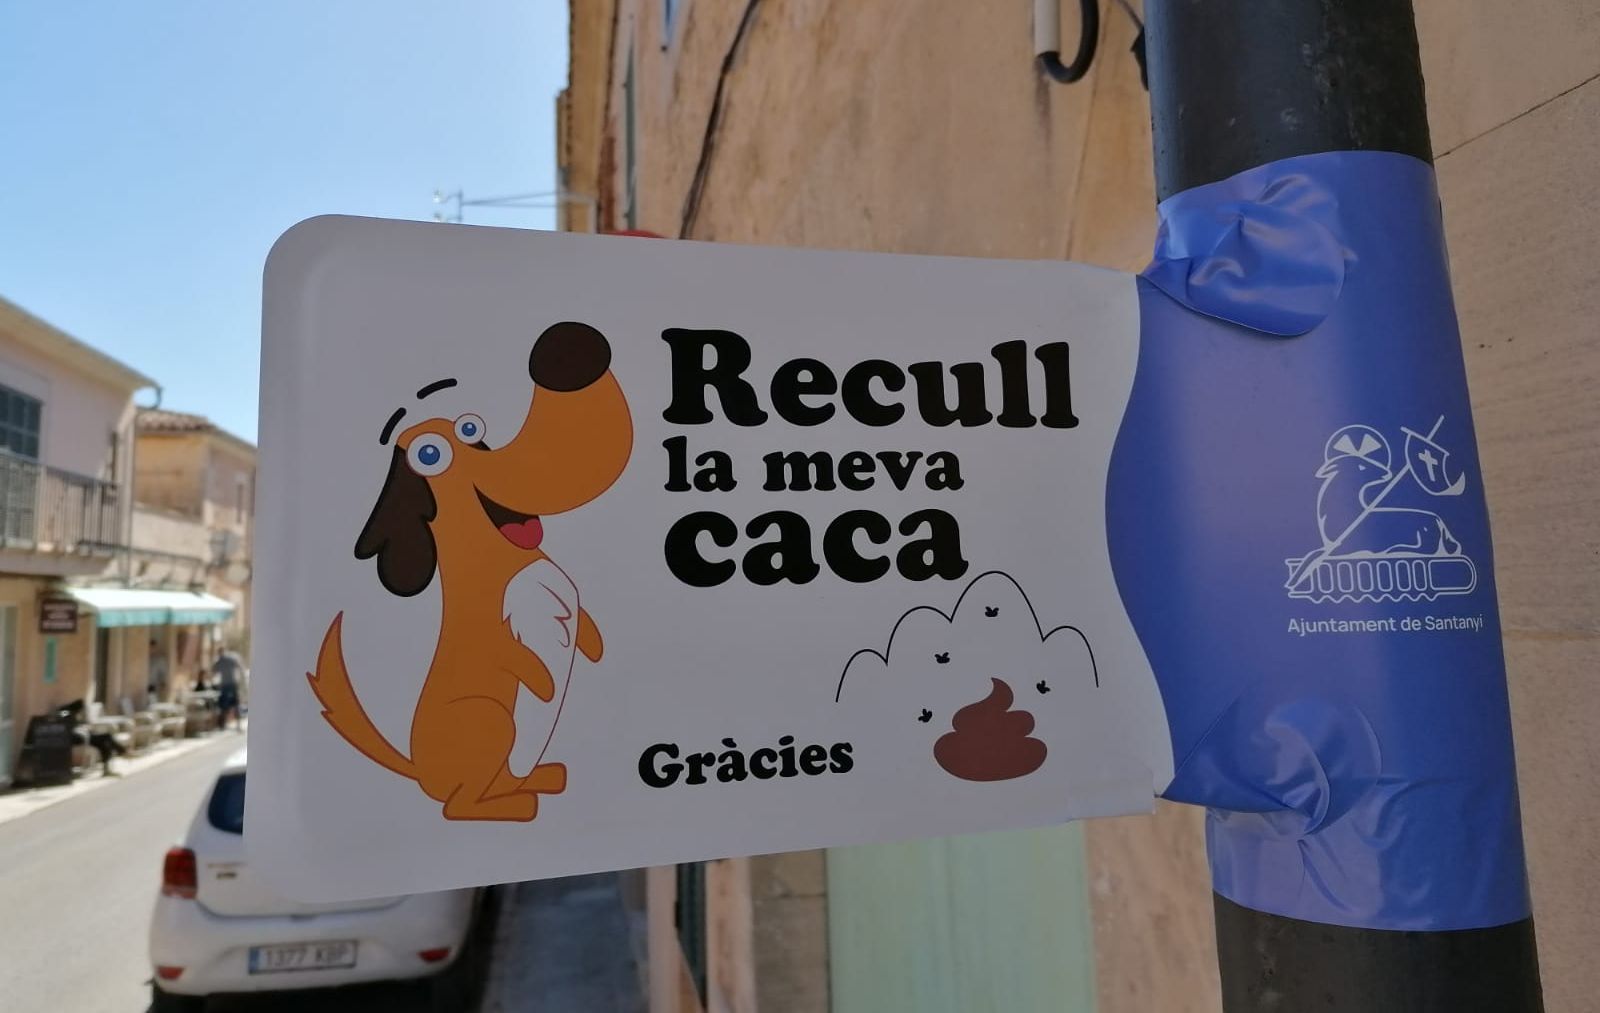 Campaña de limpieza de excrementos de animales en Santanyí.